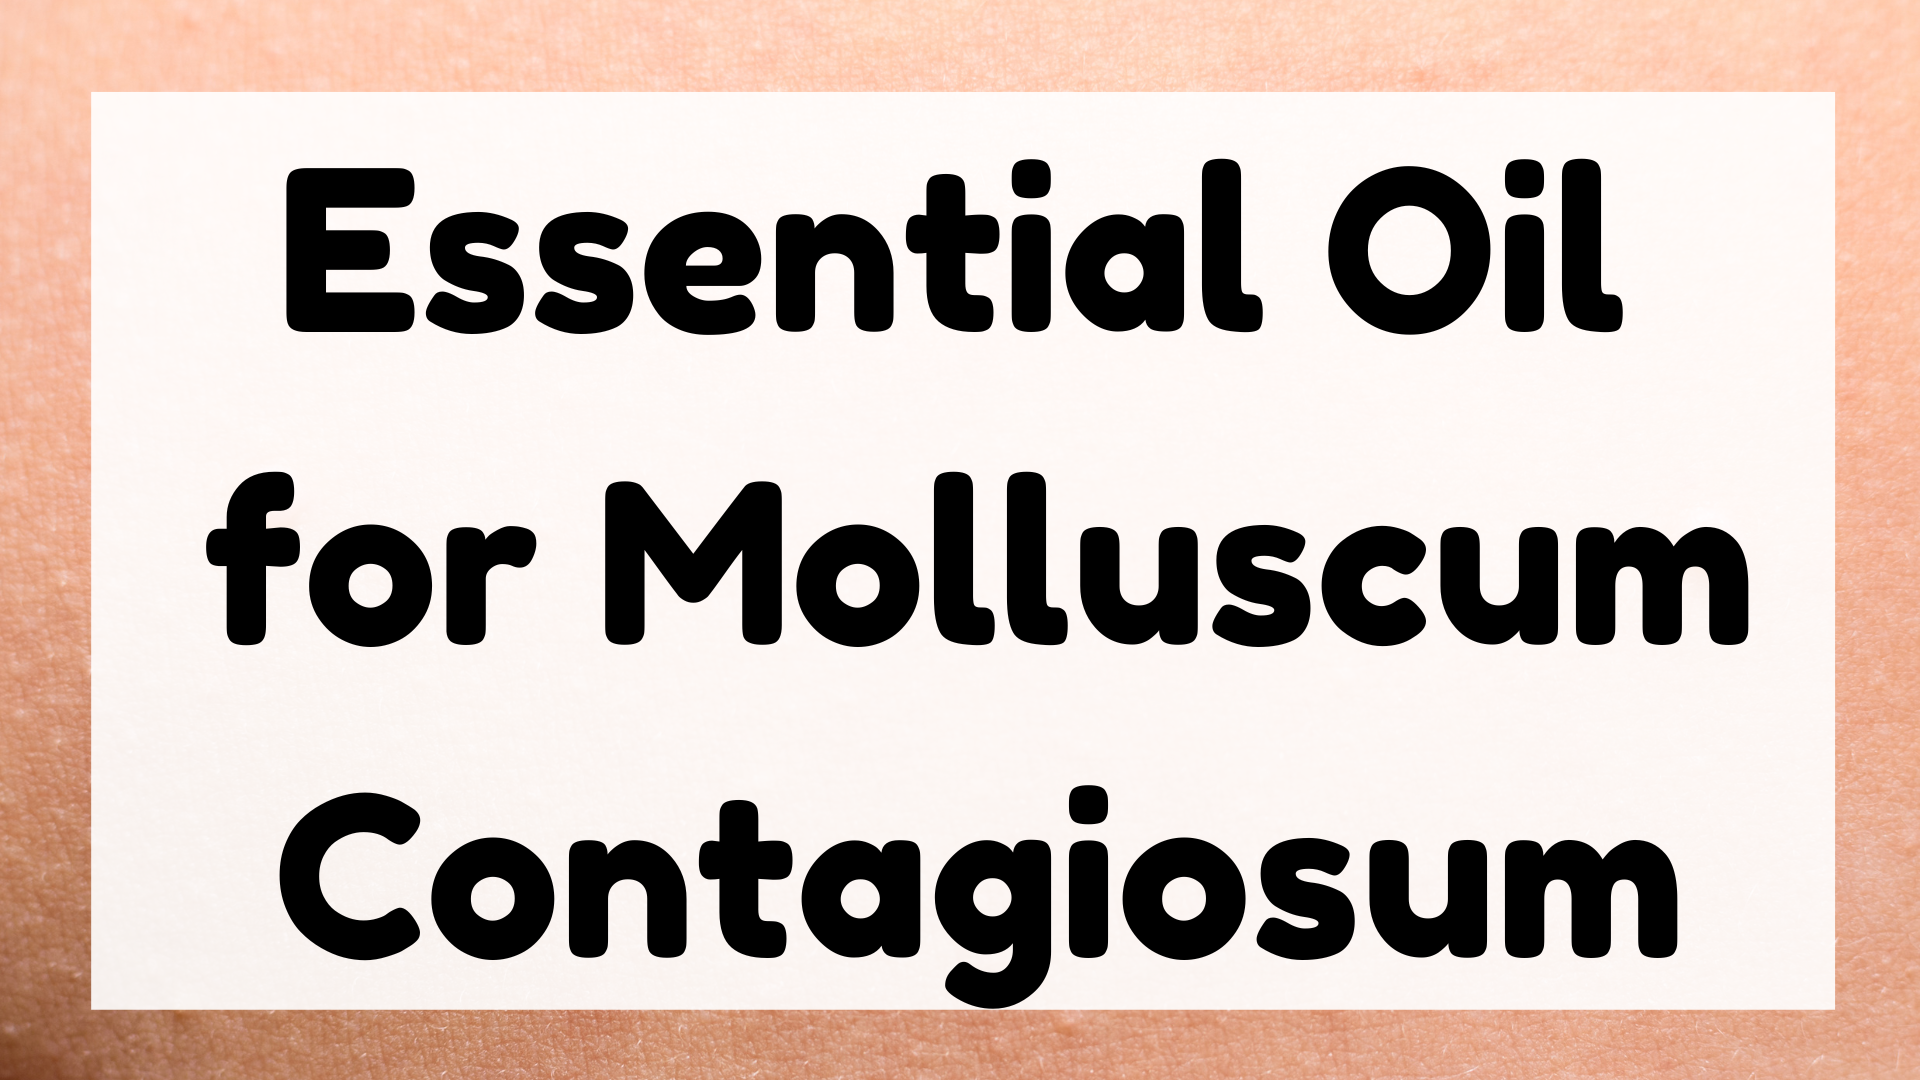 Essential Oil for Molluscum Contagiosum featured image